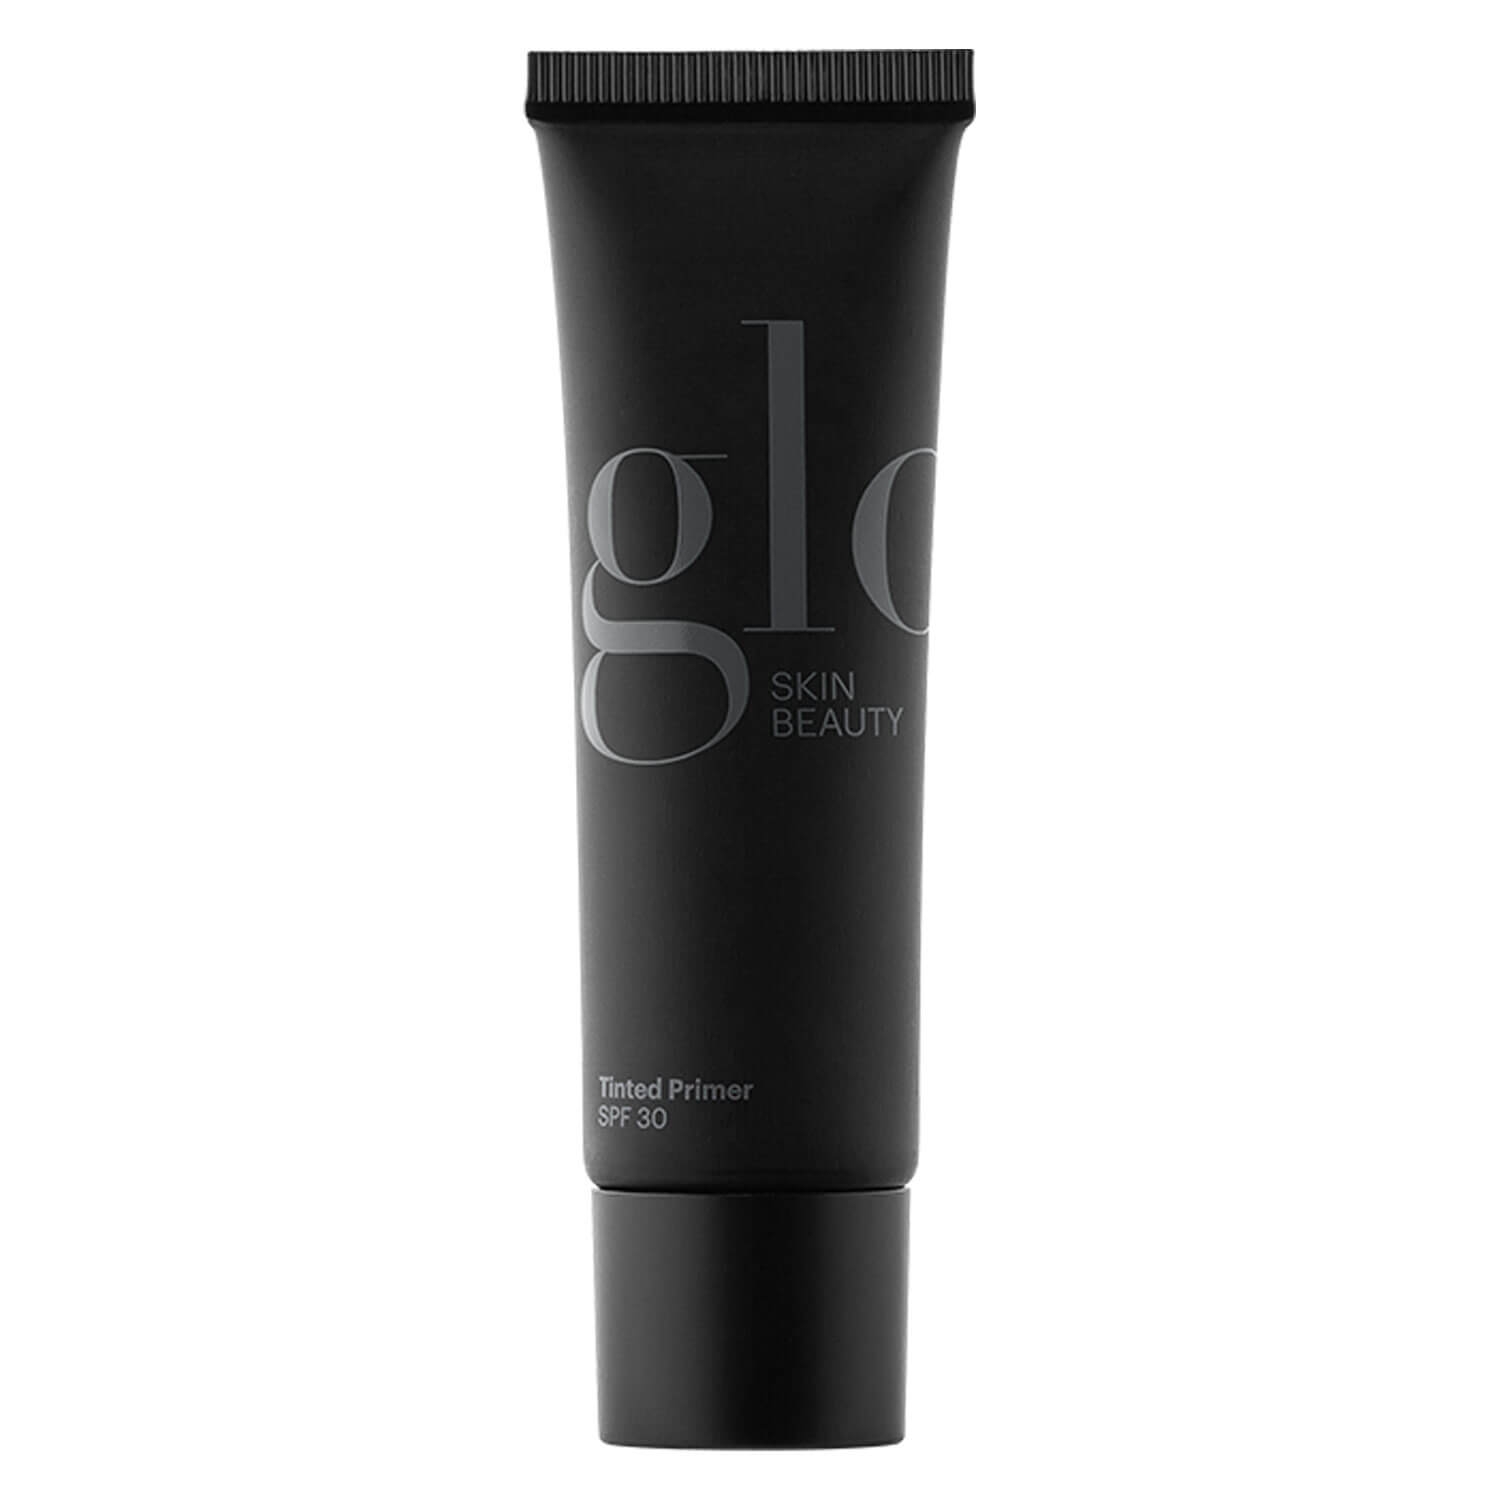 Produktbild von Glo Skin Beauty Primer - Tinted Primer Dark SPF 30